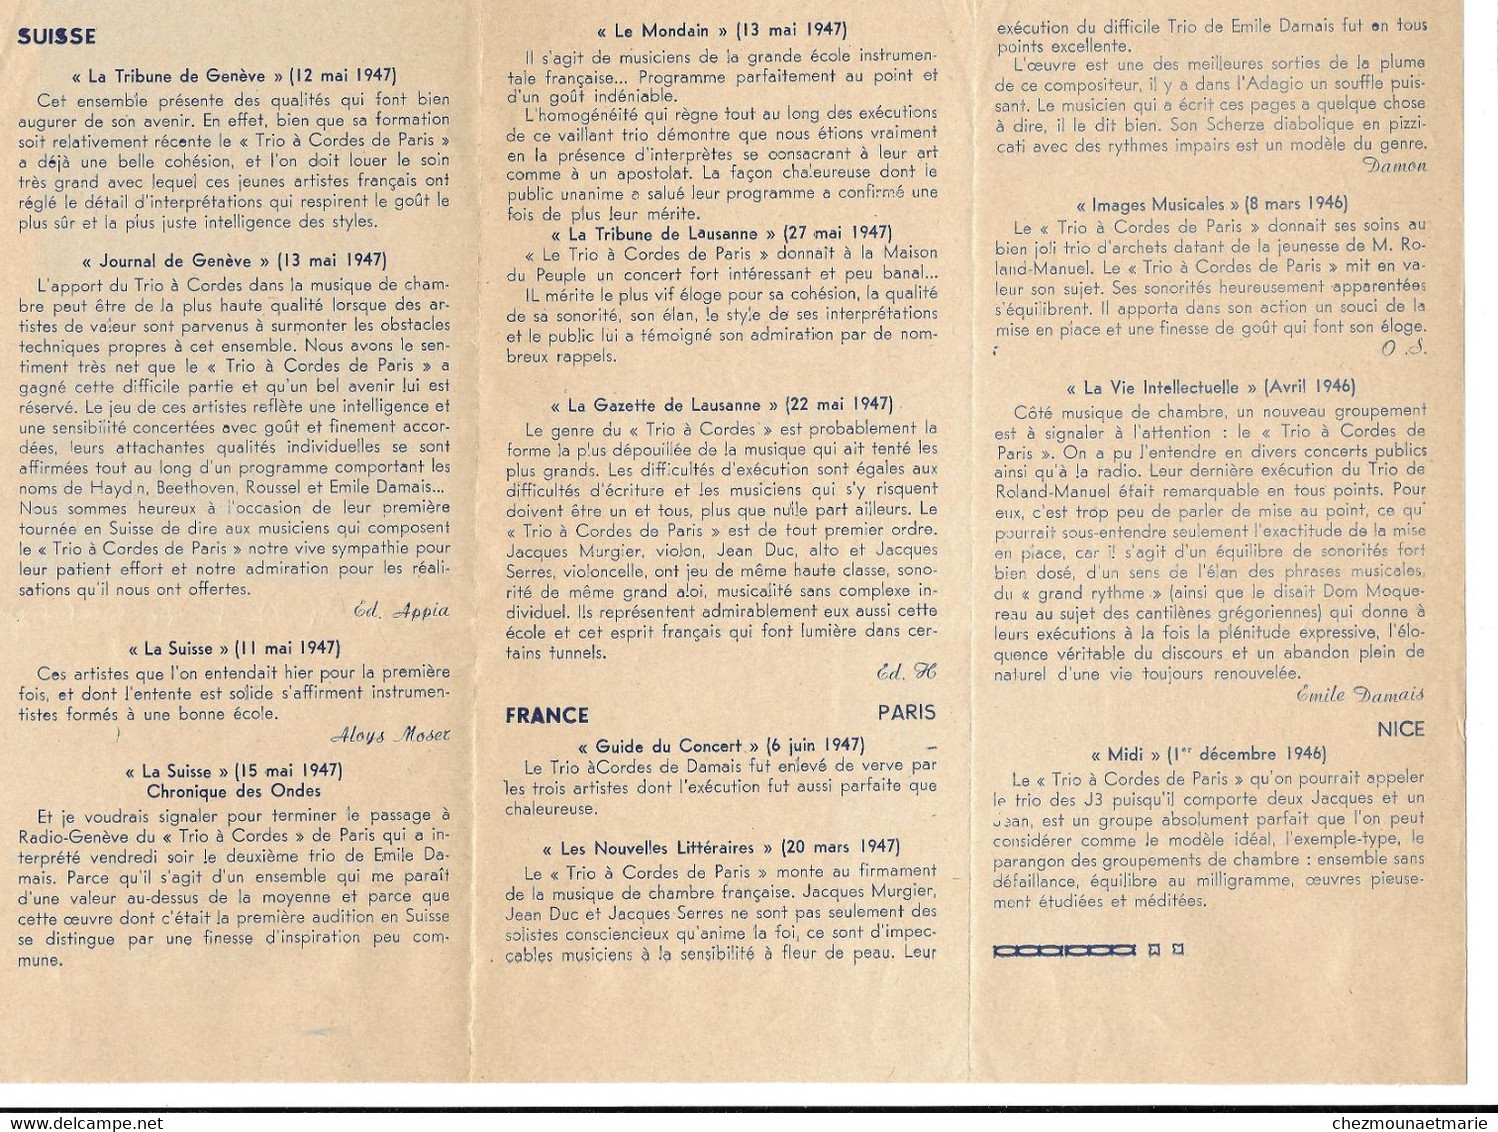 TRIO A CORDES DE PARIS - AUTOGRAPHE DE JACQUES SERRES VIOLONCELLISTE VIOLONCELLE SUR LETTRE TAPUSCRITE + DEPLIANT - Historische Dokumente